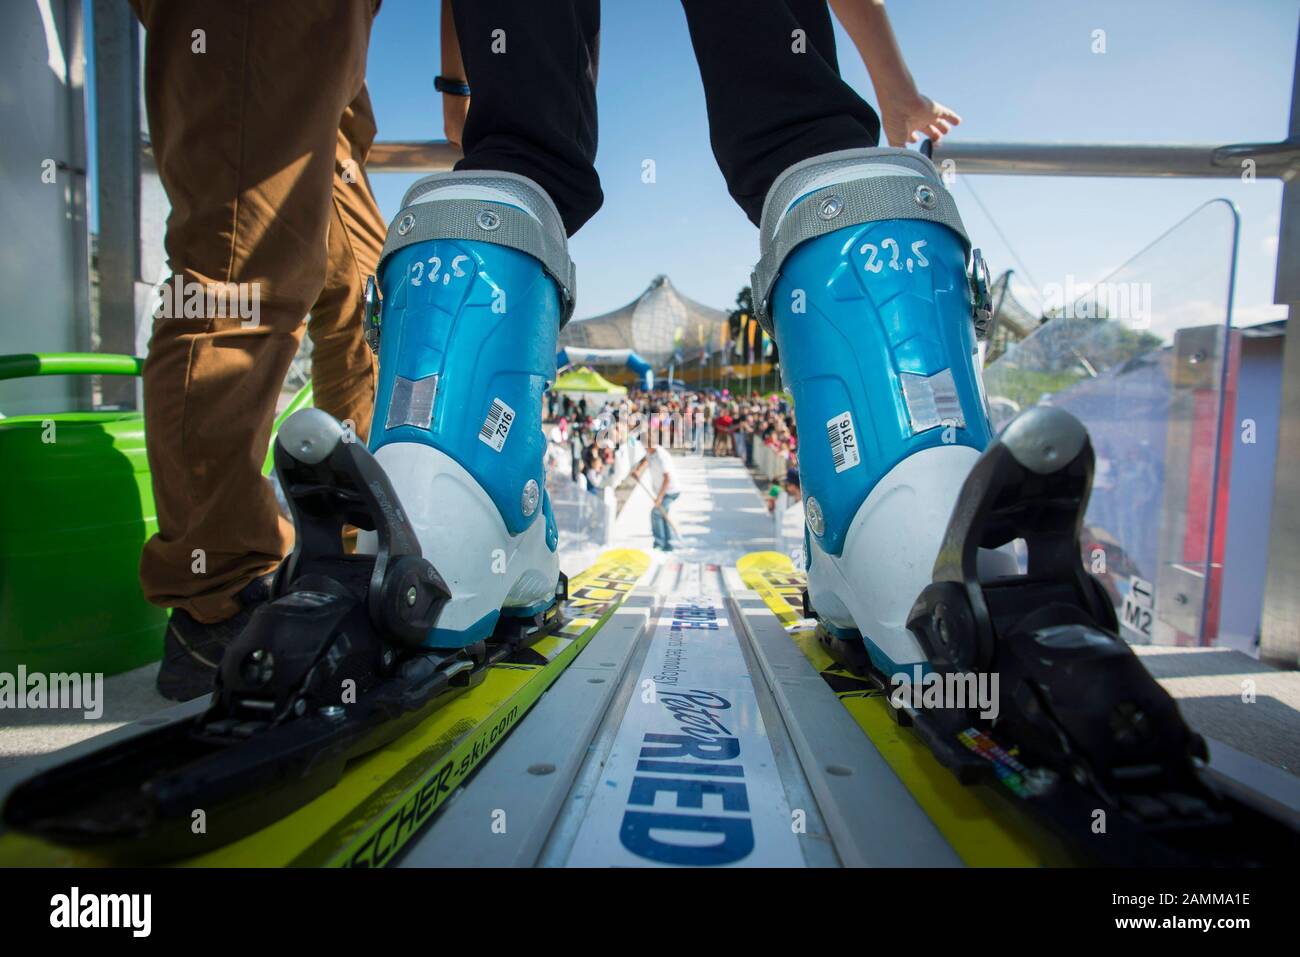 Plus de 50 disciplines sportives peuvent être essayées au M-net Outdoor Sports Festival du parc olympique de Munich, qui se tient pour la première fois. La photo montre un mini saut à ski. [traduction automatique] Banque D'Images